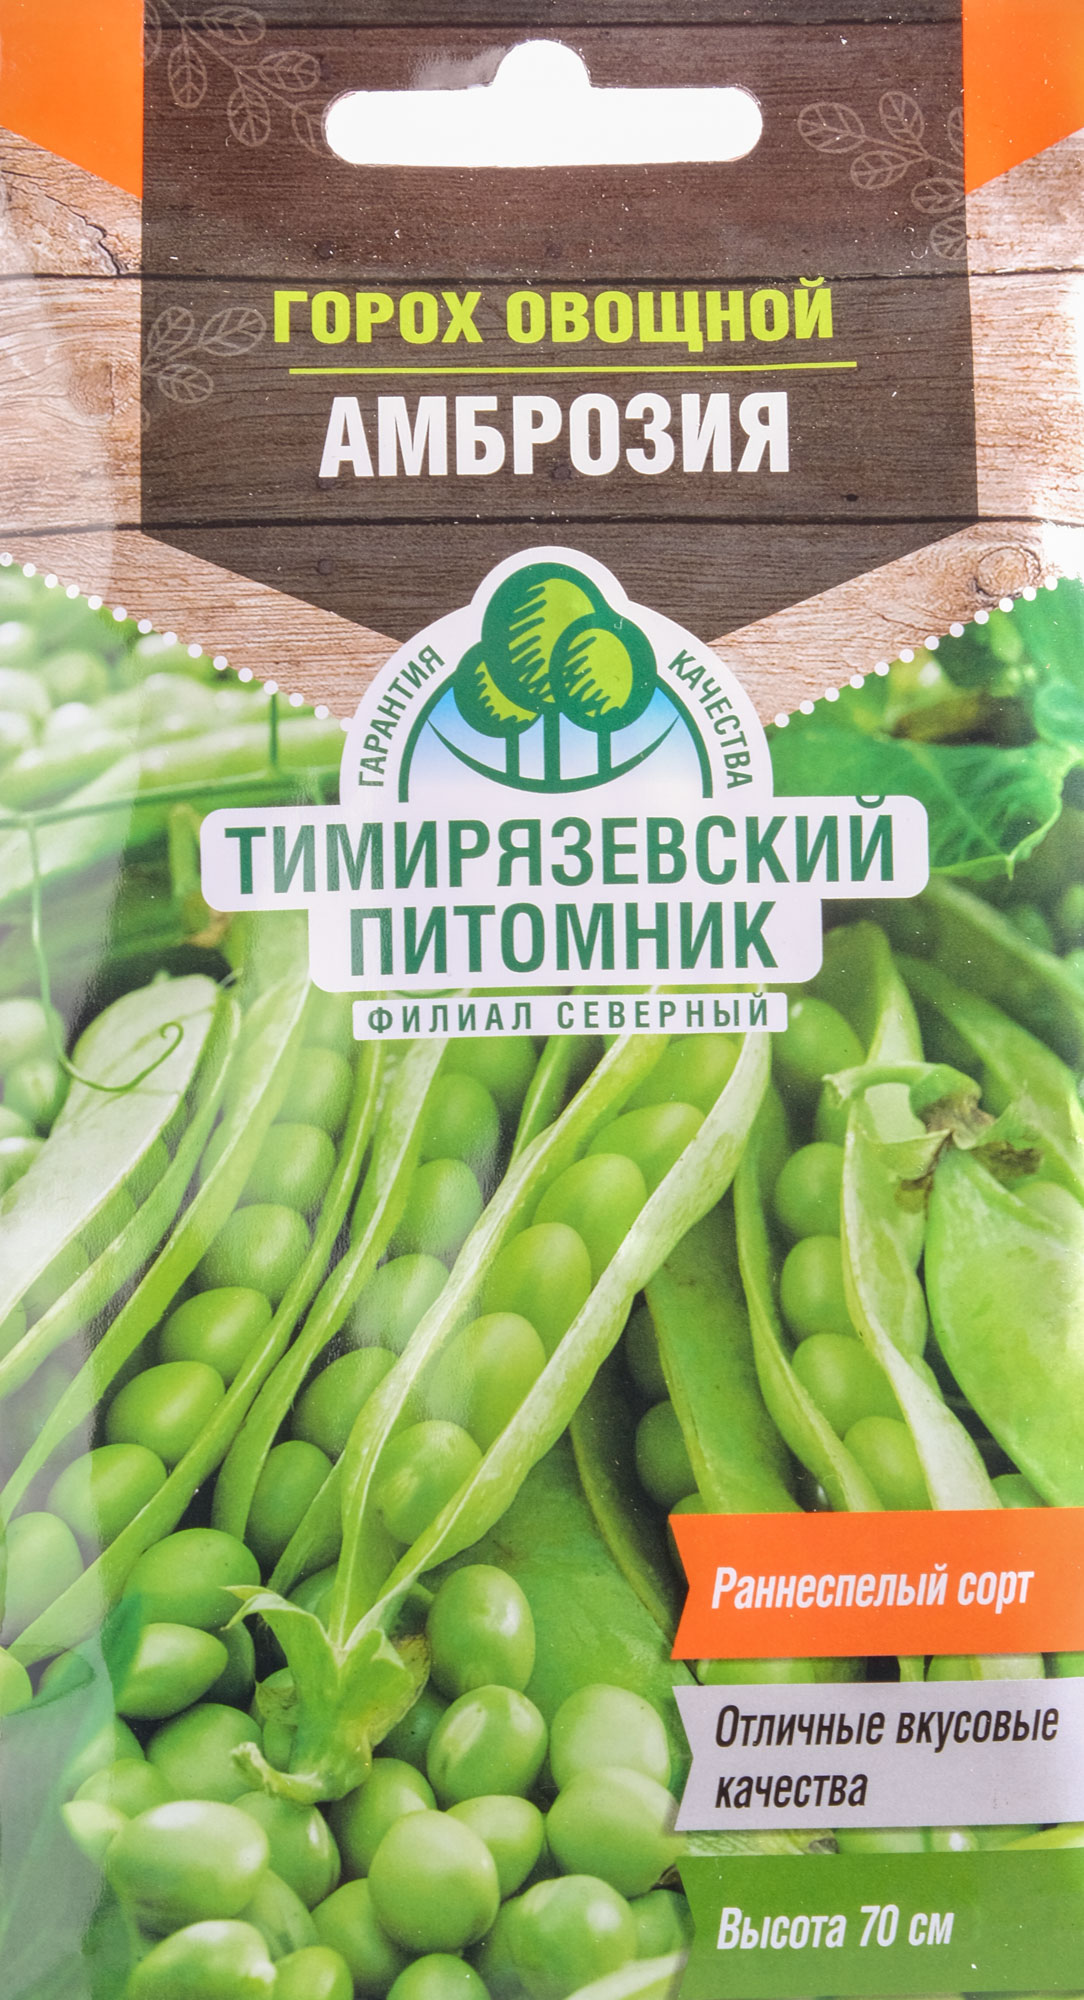 Семена Горох овощной Амброзия раннеспелый 10г купить с доставкой вМЕГАСТРОЙ Йошкар-Ола